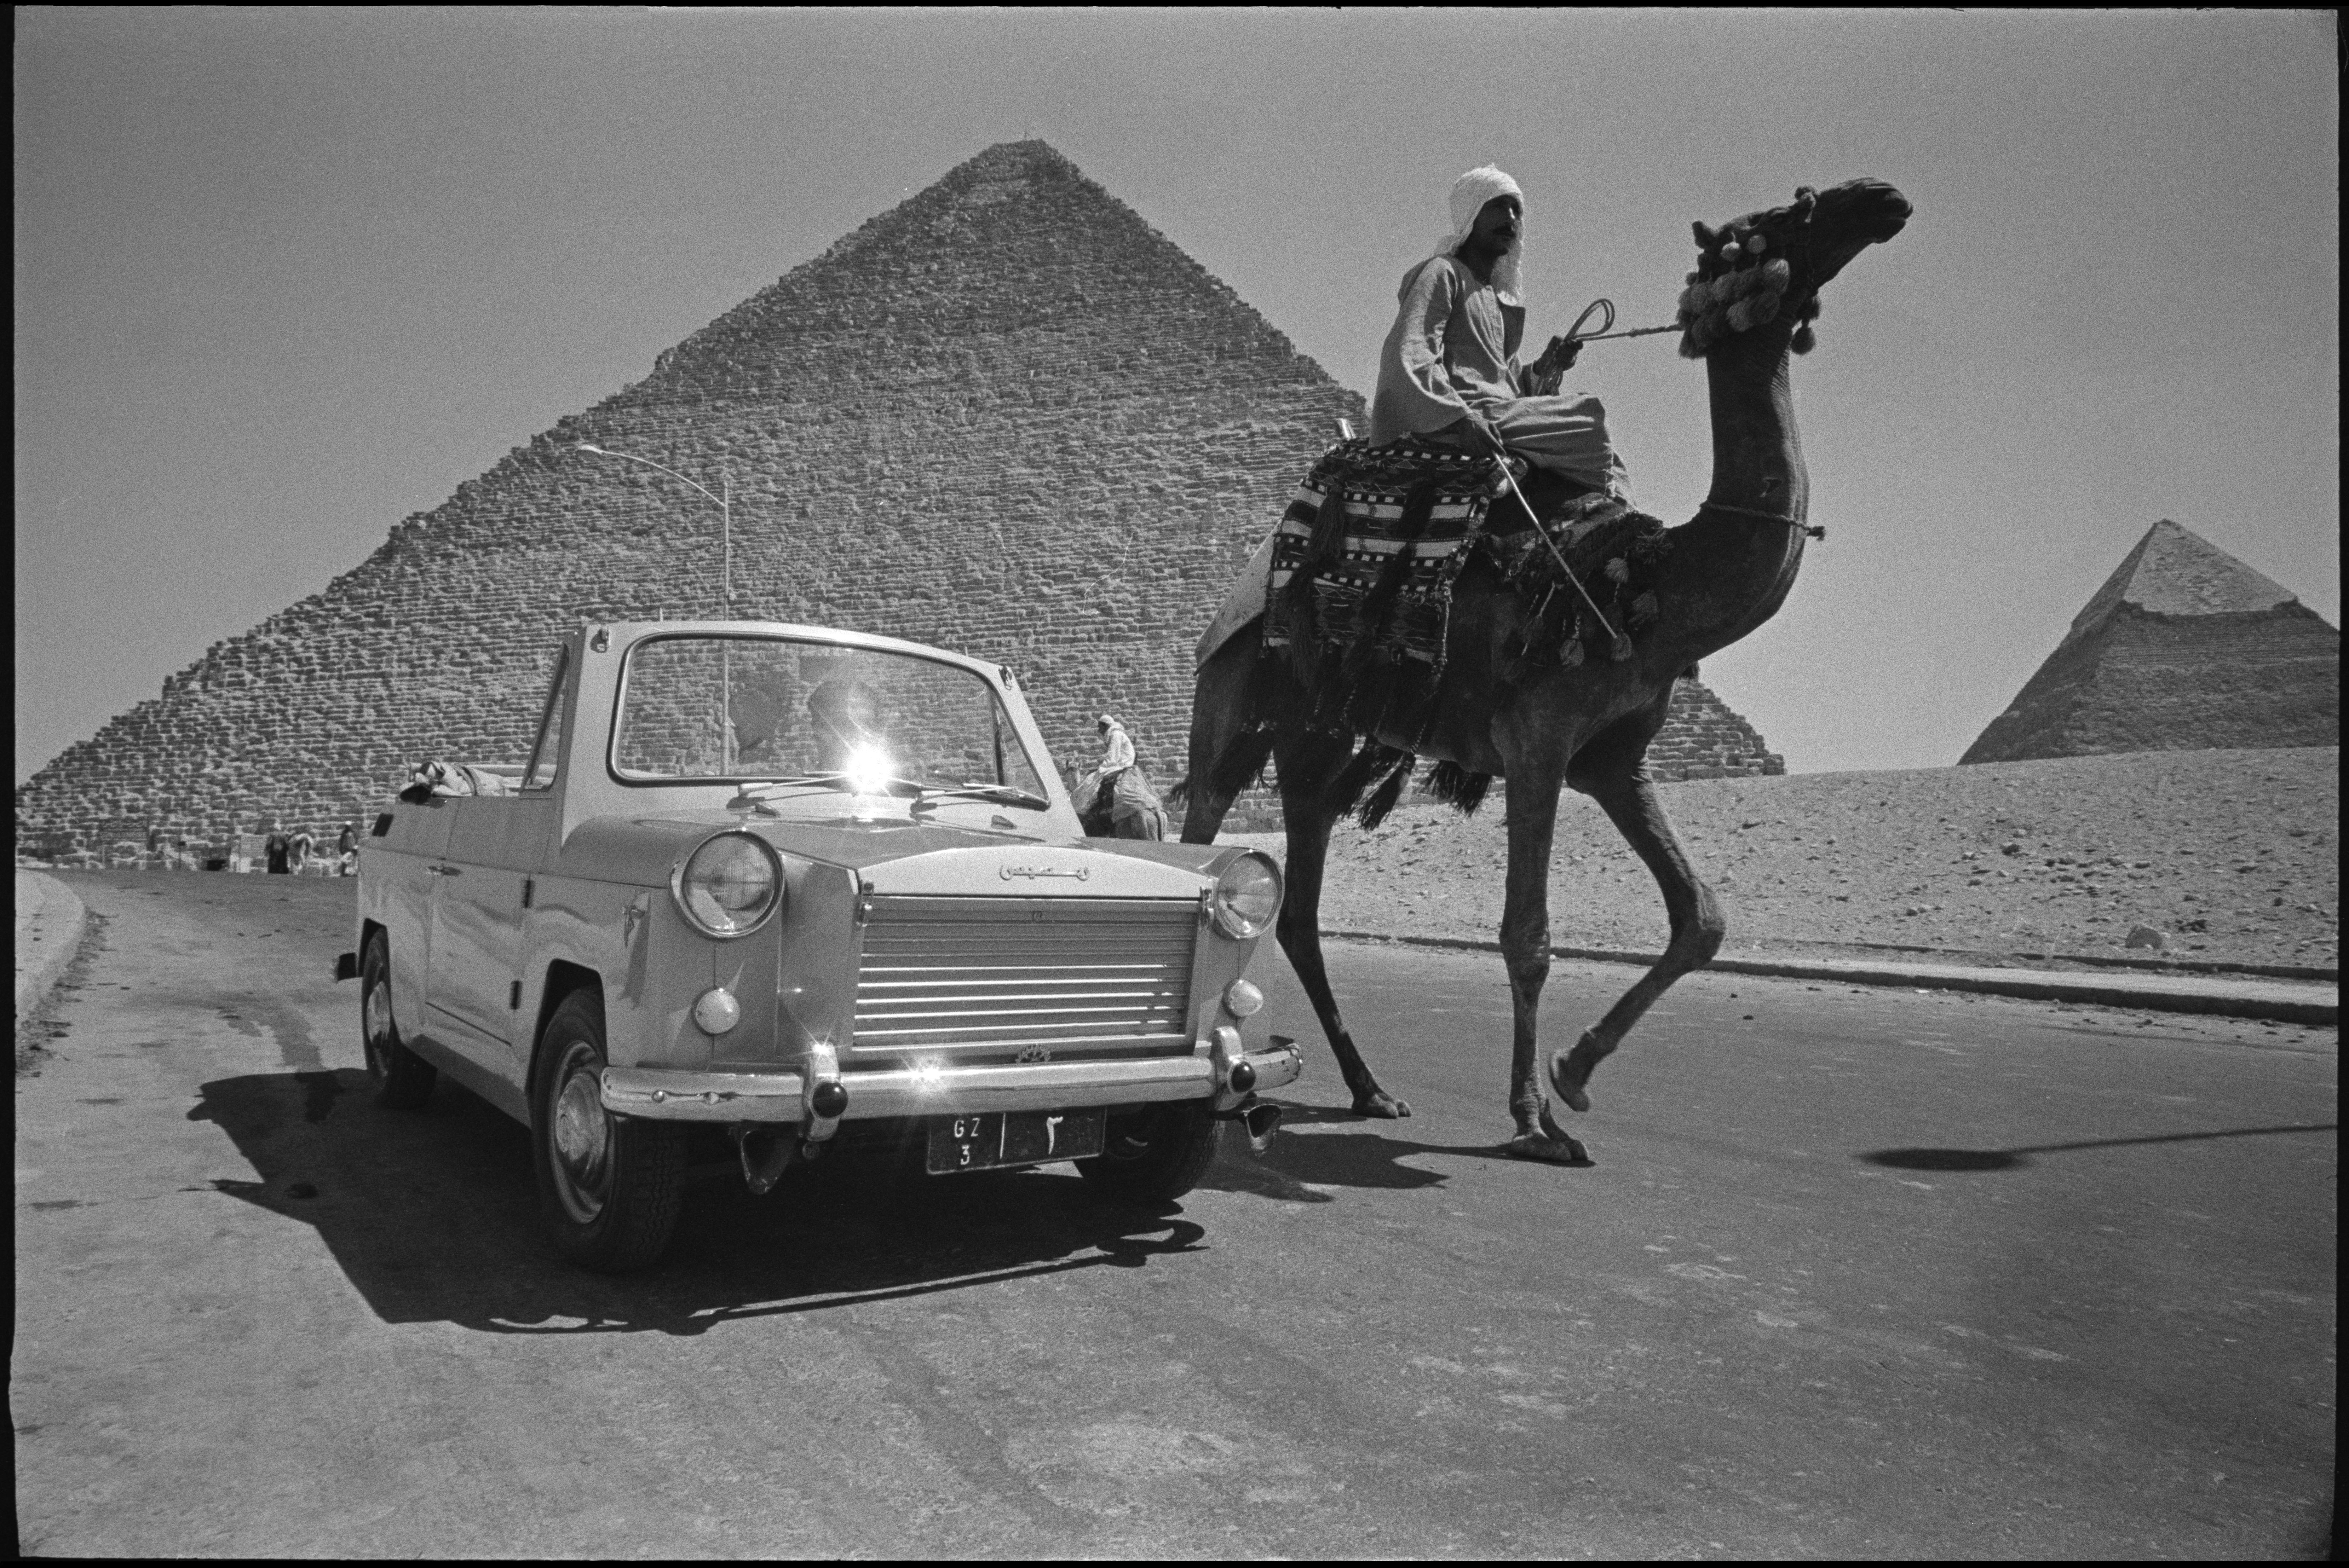 René Burri: Imaginary Pyramids • Magnum Photos